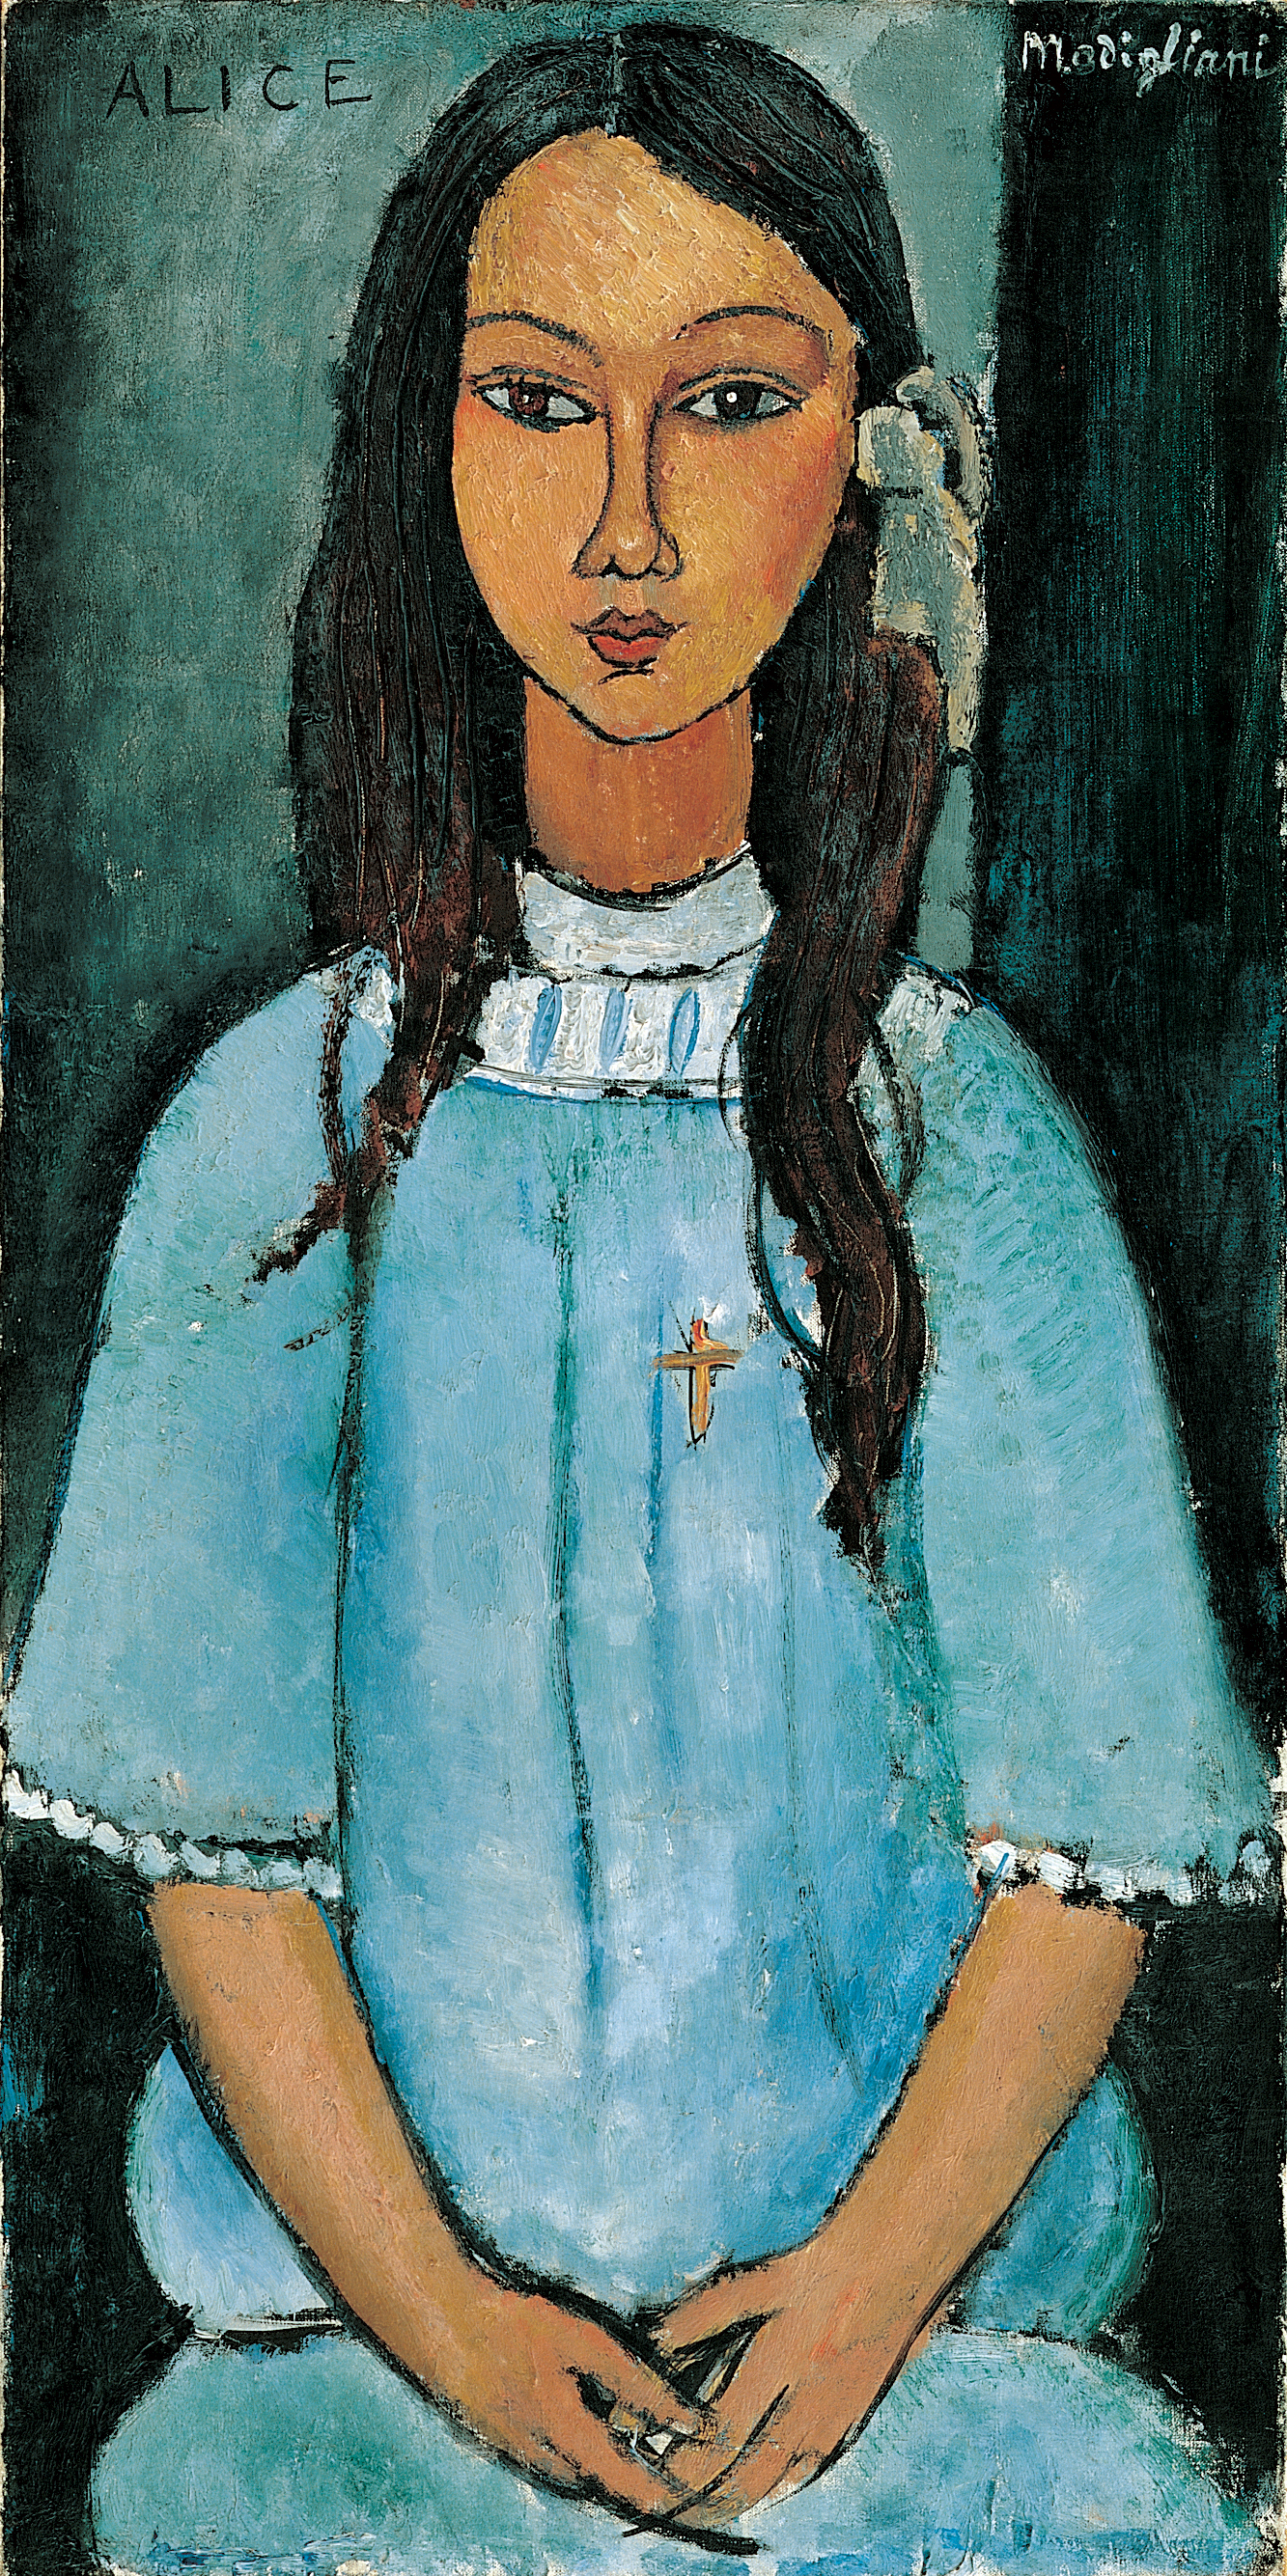 Alice by Amedeo Modigliani - 1918 - 39 x 78.5 cm 